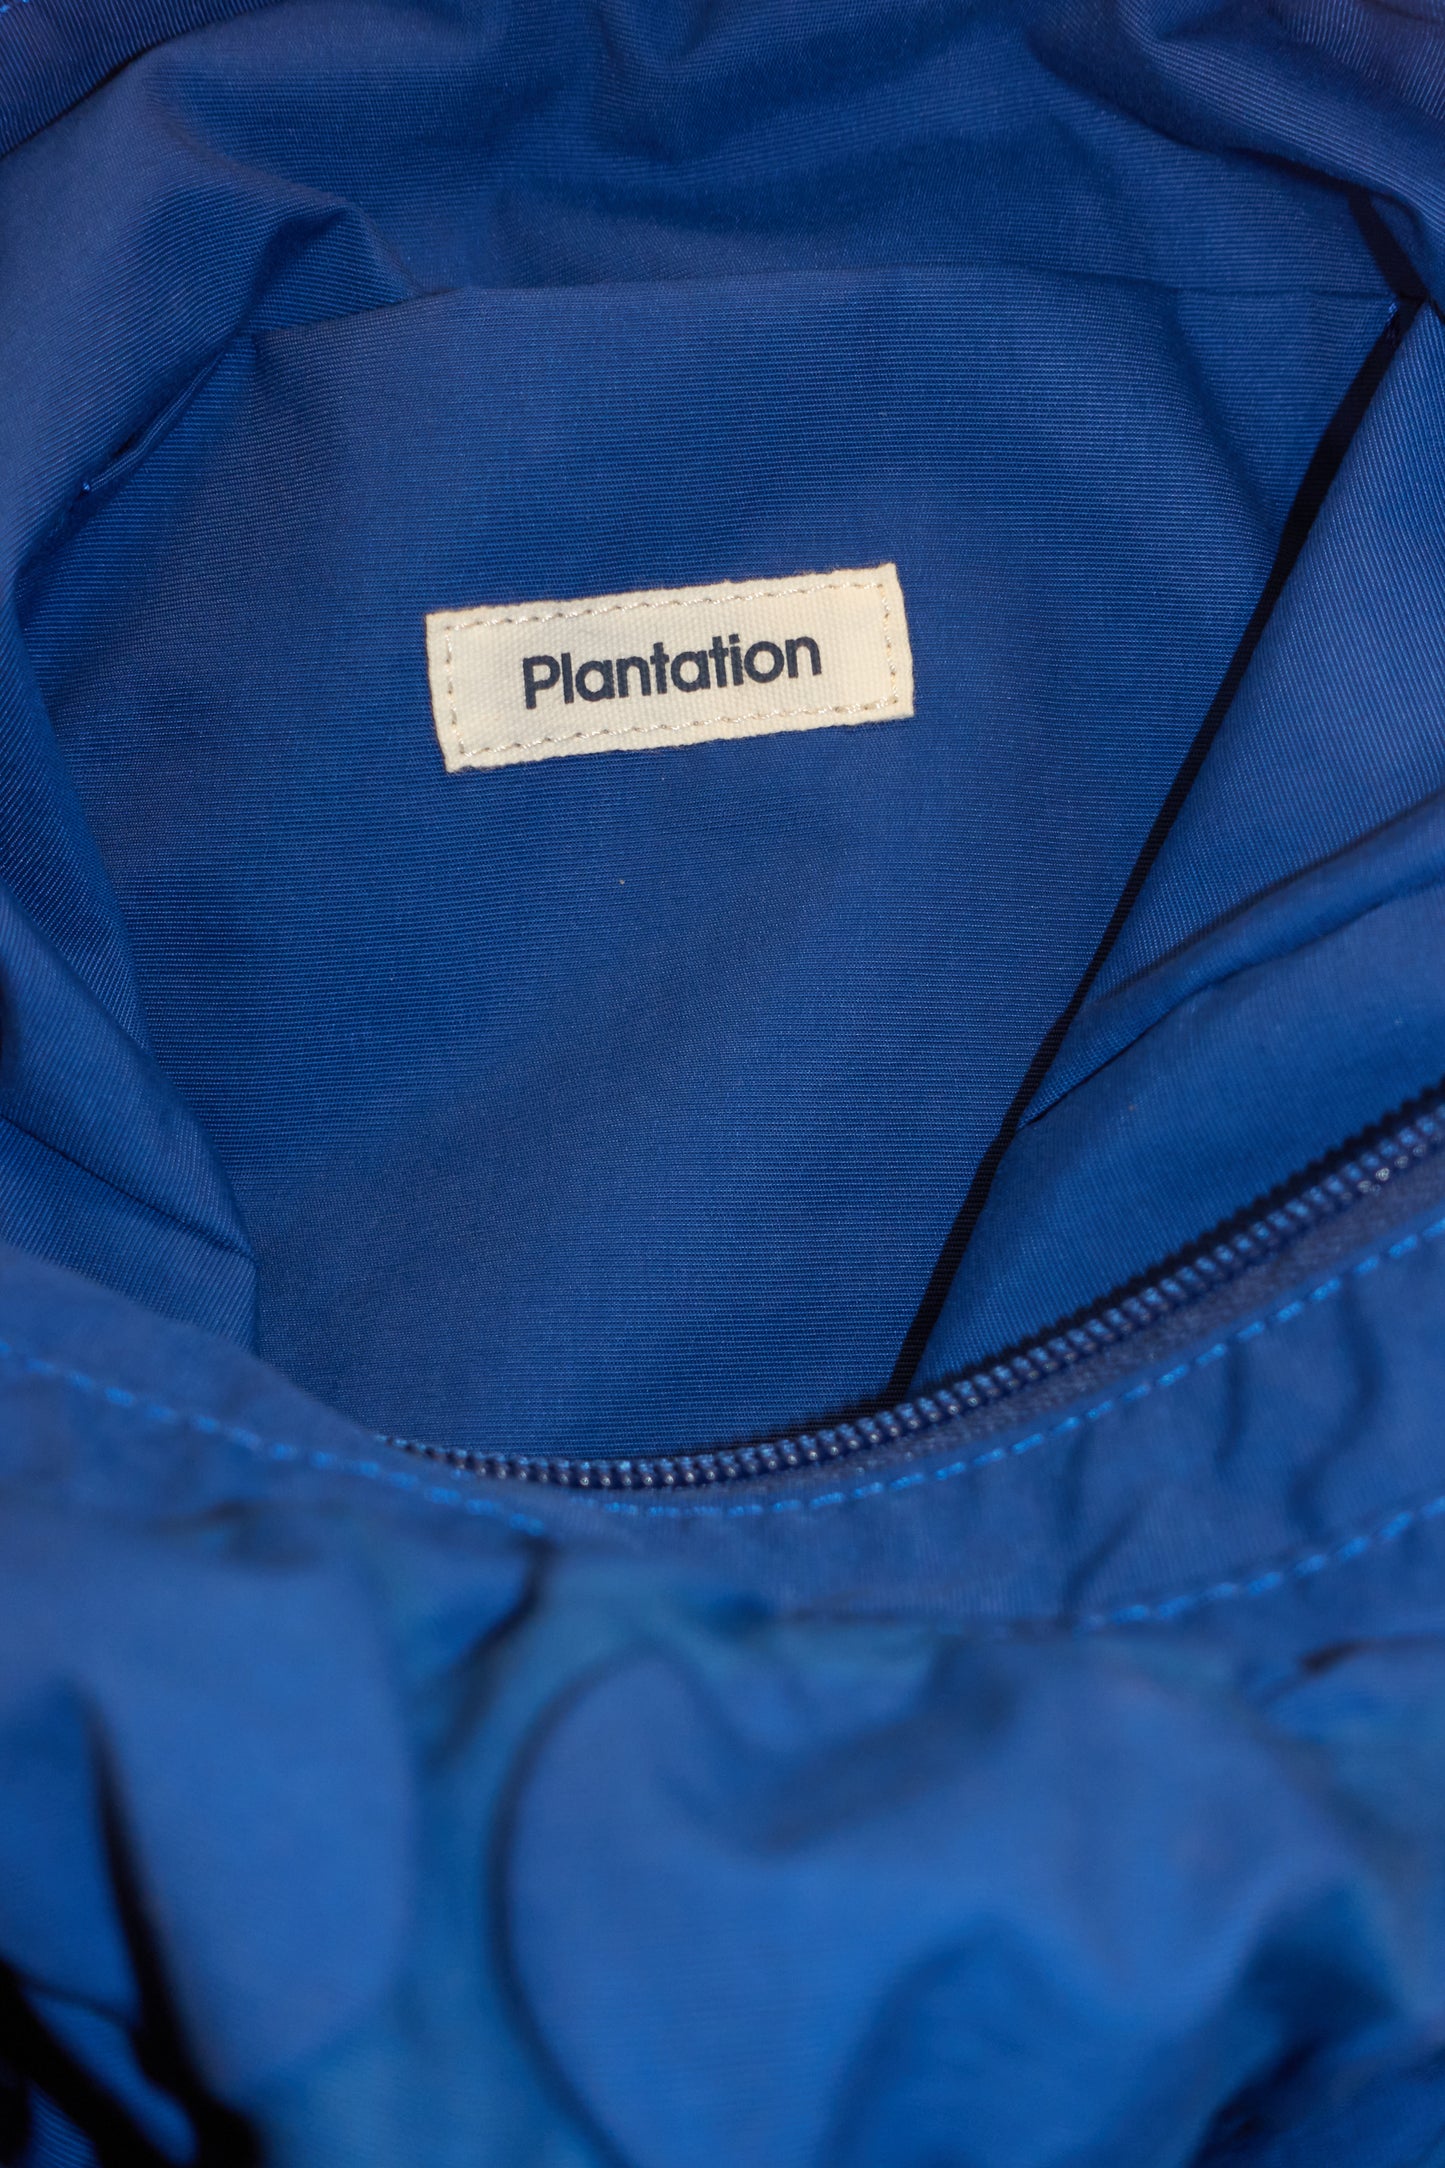 Plantation 'bubblewrap' satchel